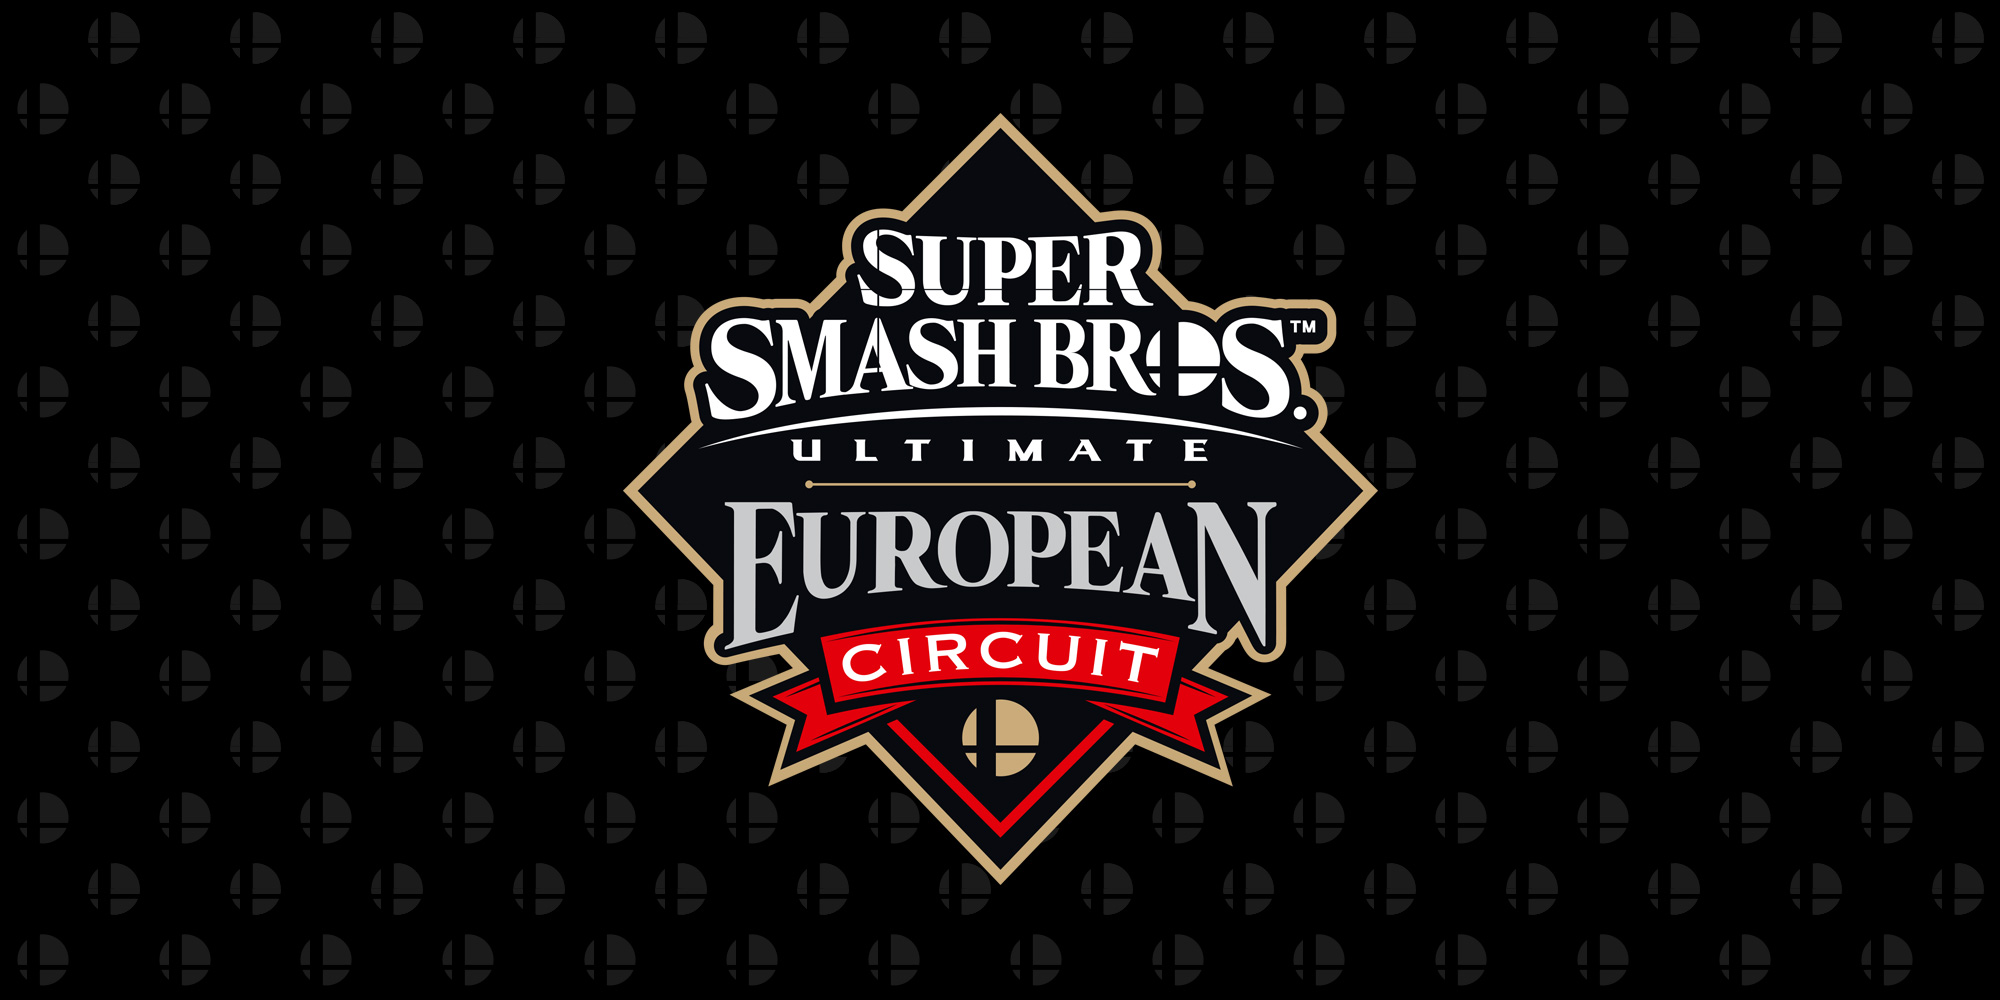 DarkThunder pakt de eerste plaats op DreamHack Leipzig, het vierde evenement van het Super Smash Bros. Ultimate European Circuit!